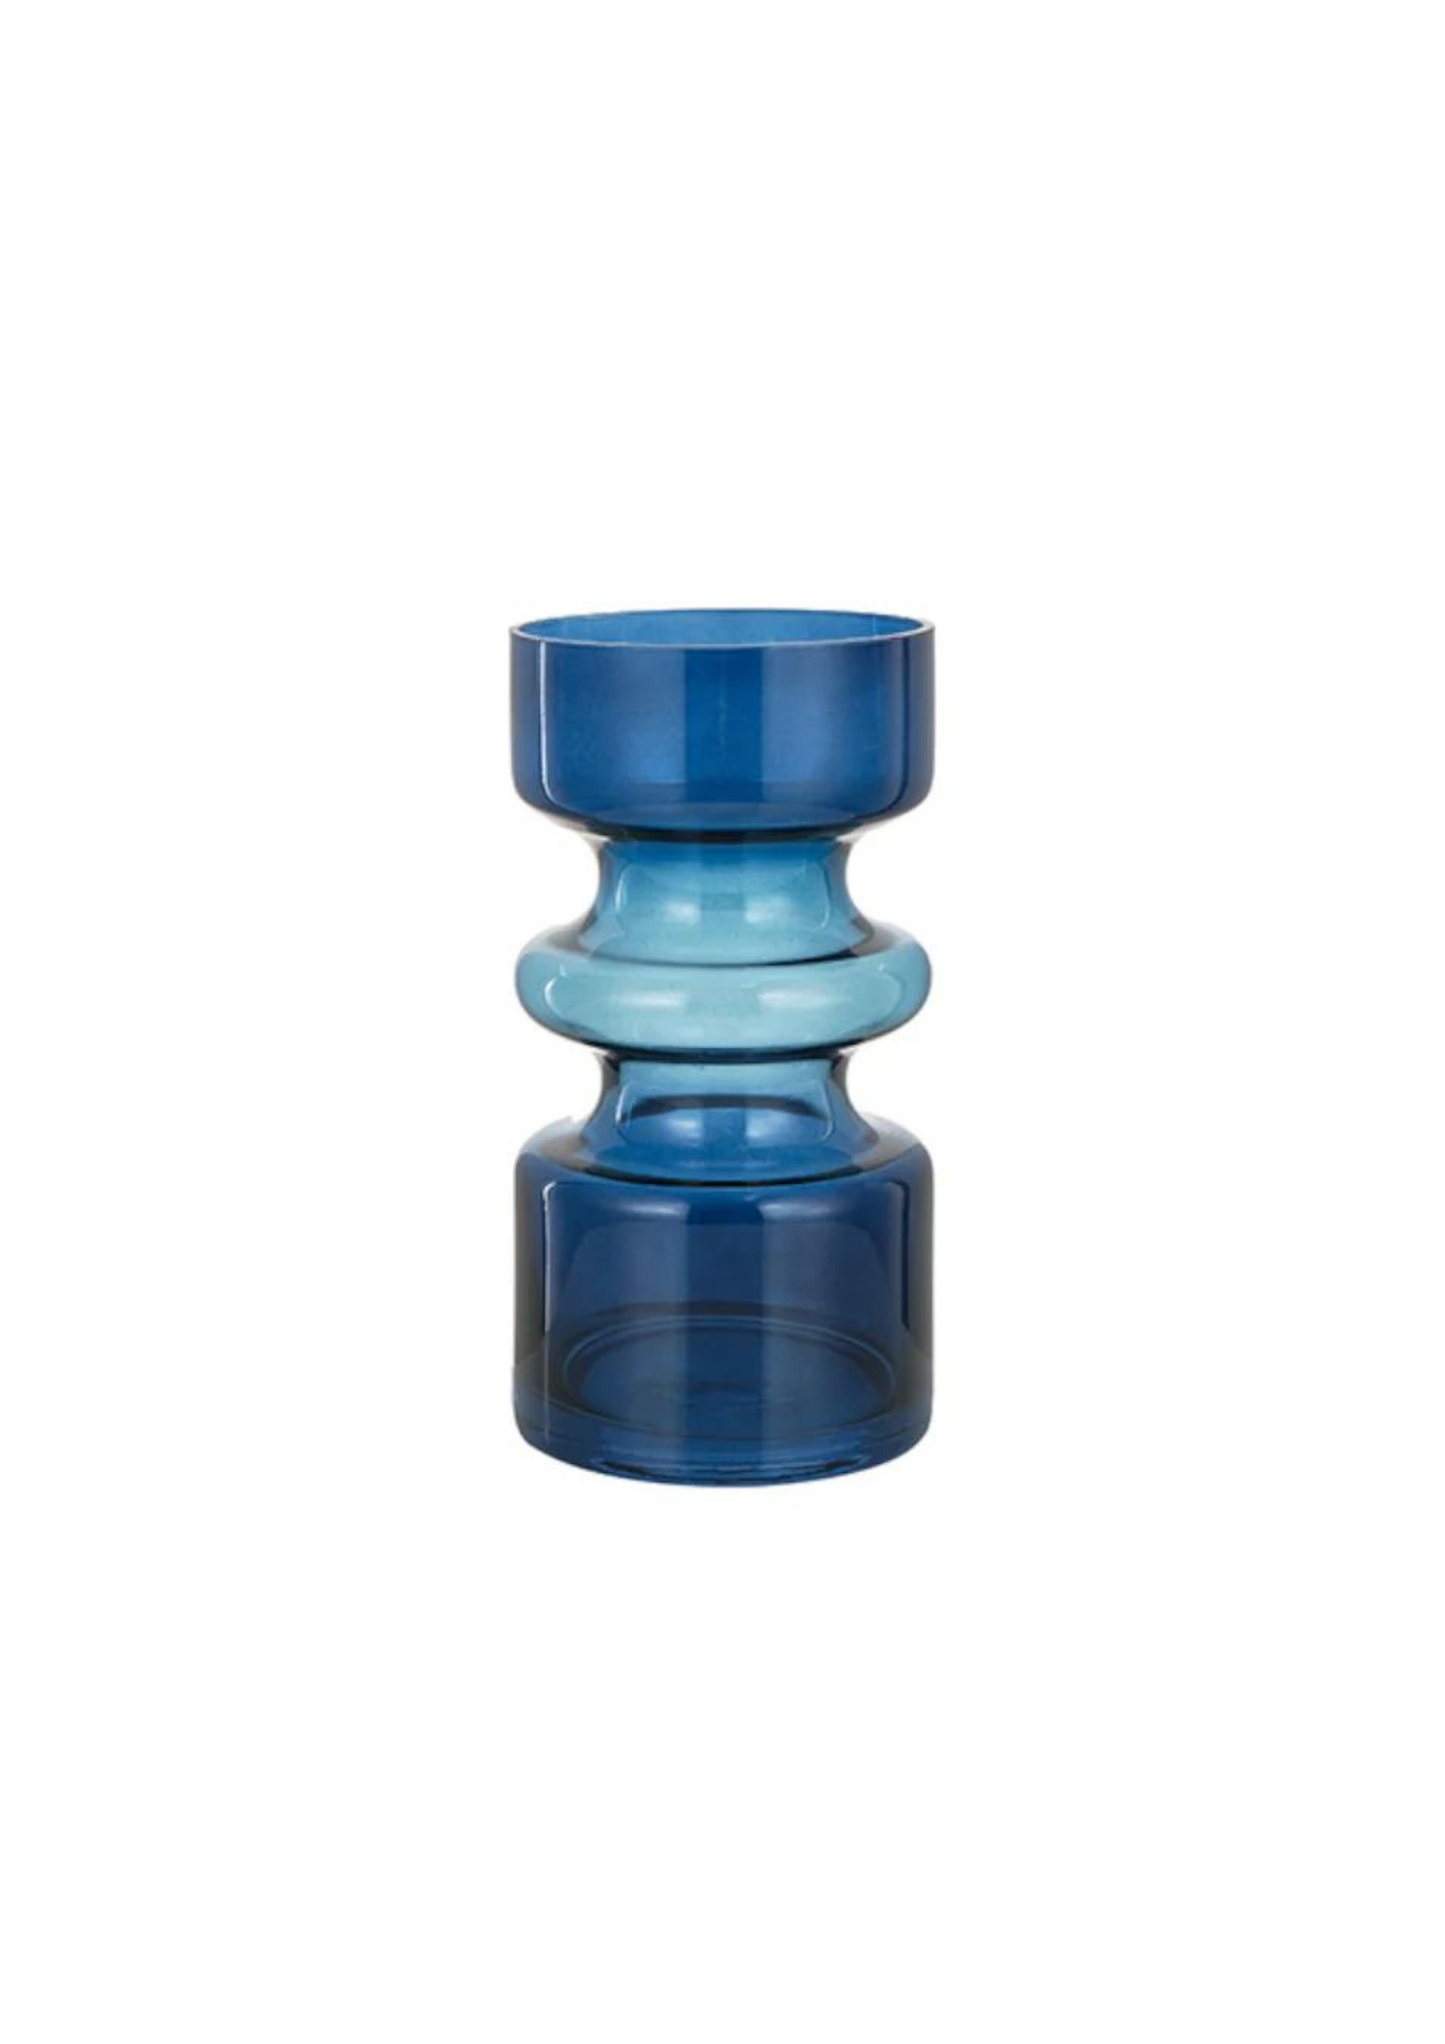 Irregular blue shaded glass vase